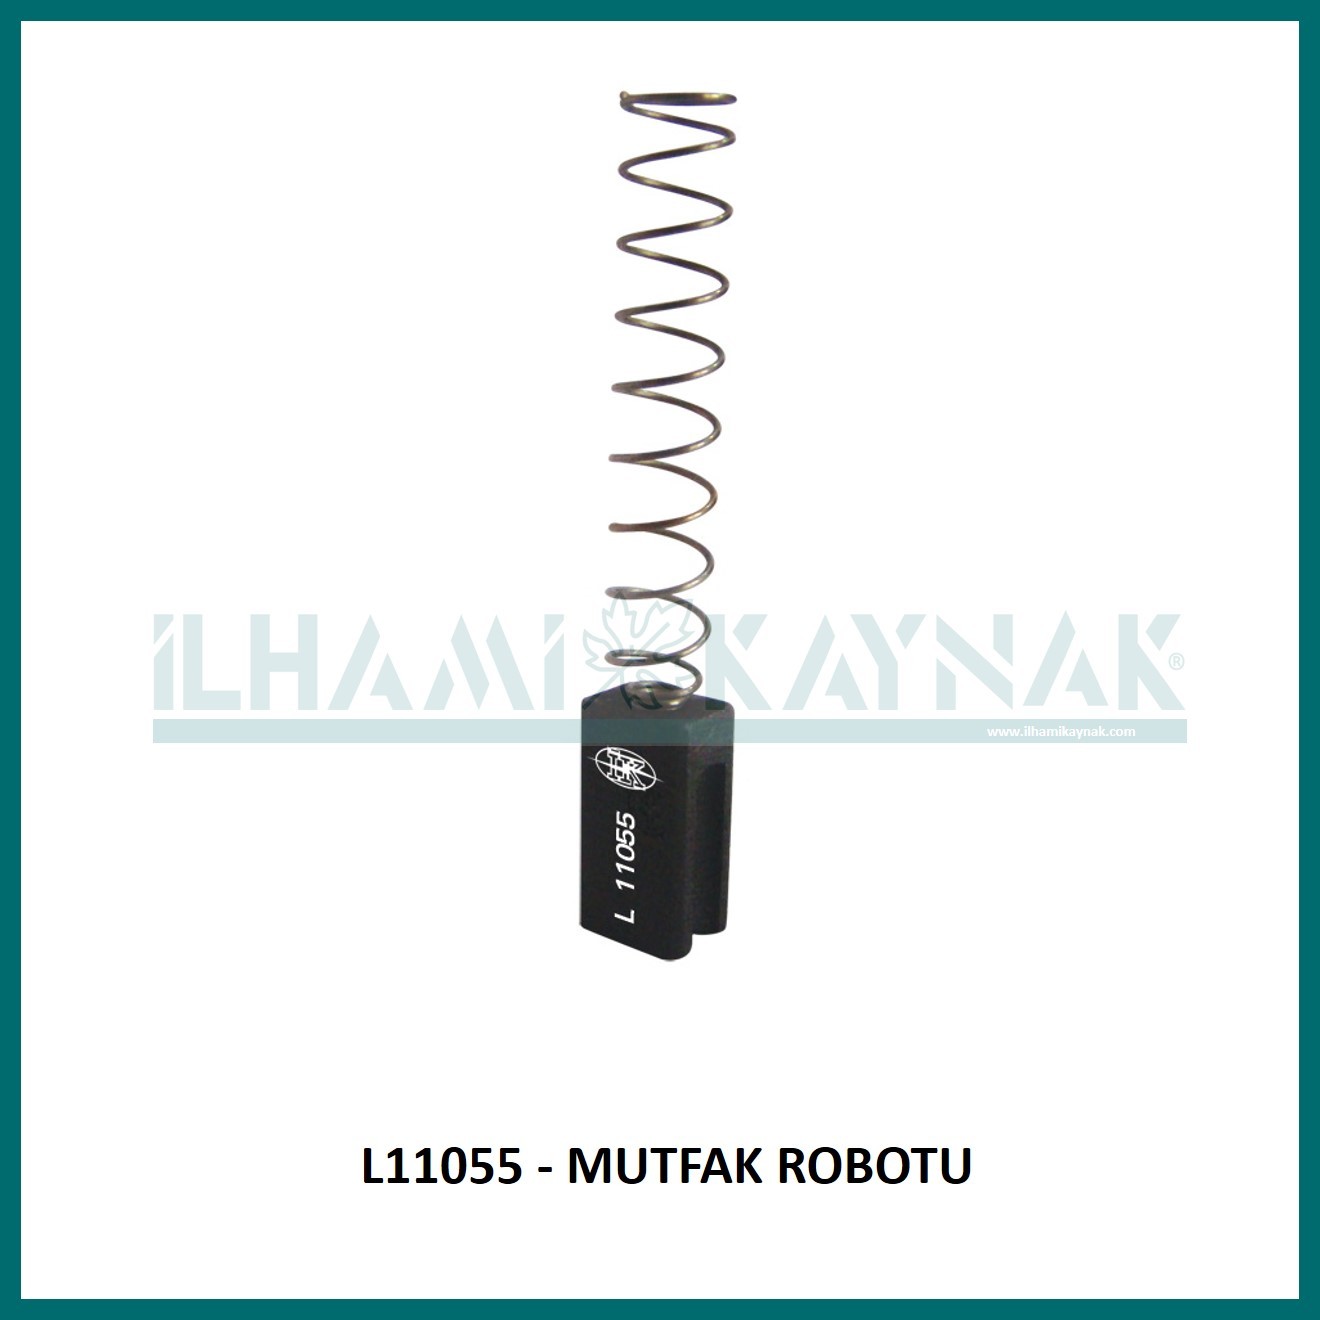 L11055 - MUTFAK ROBOTU - 6.5*9*16.5 mm - 100 Adet